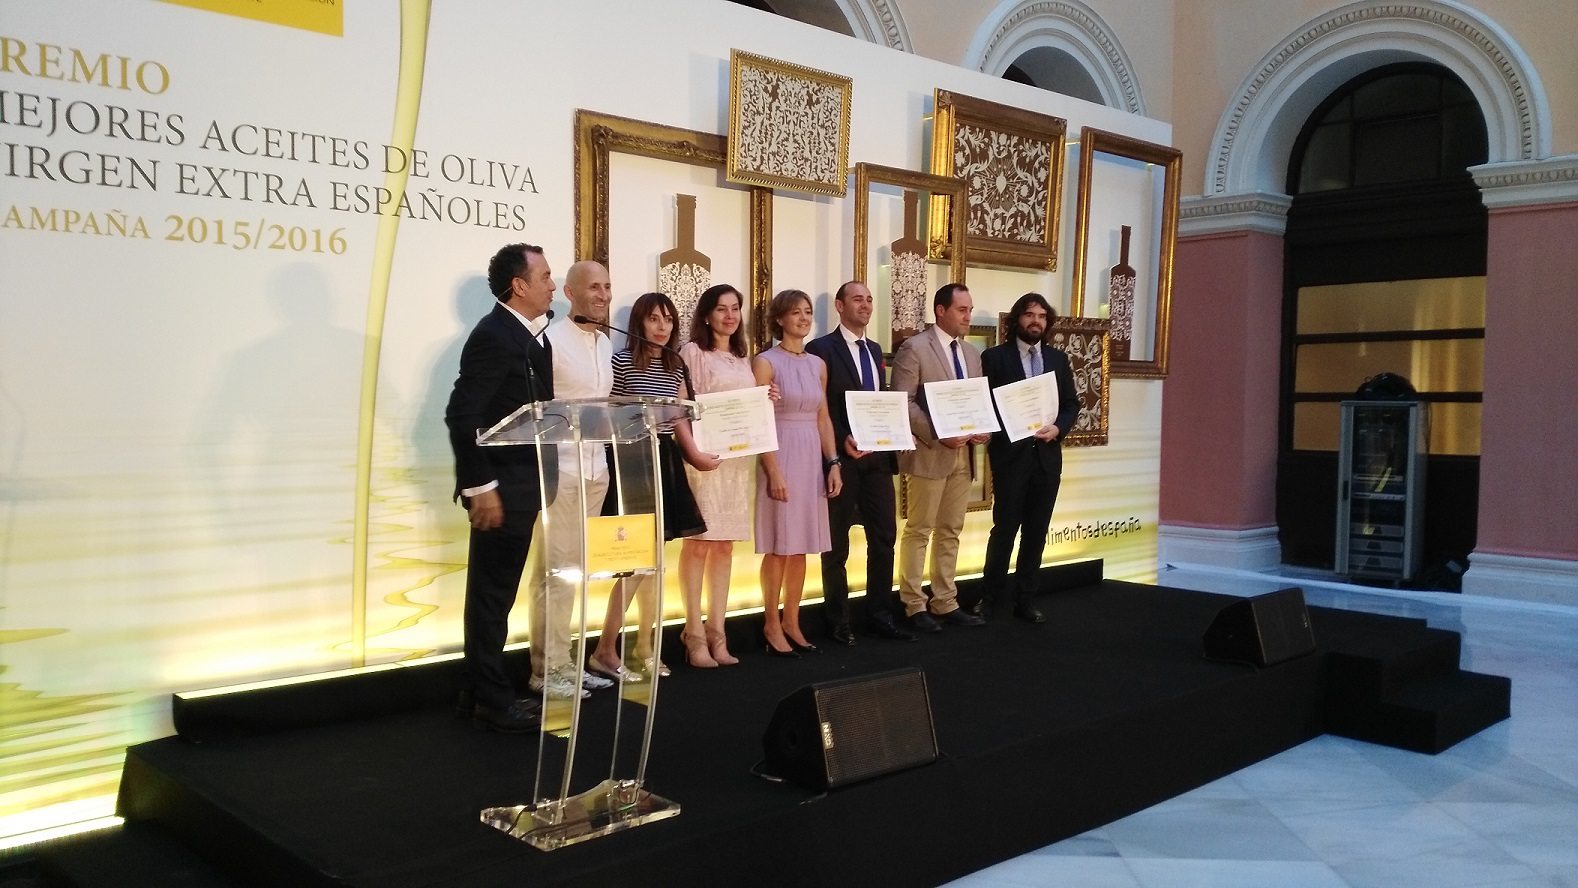 La ministra, junto a los premiados, ayer en Madrid. Foto: Efeagro/Ginés Mena